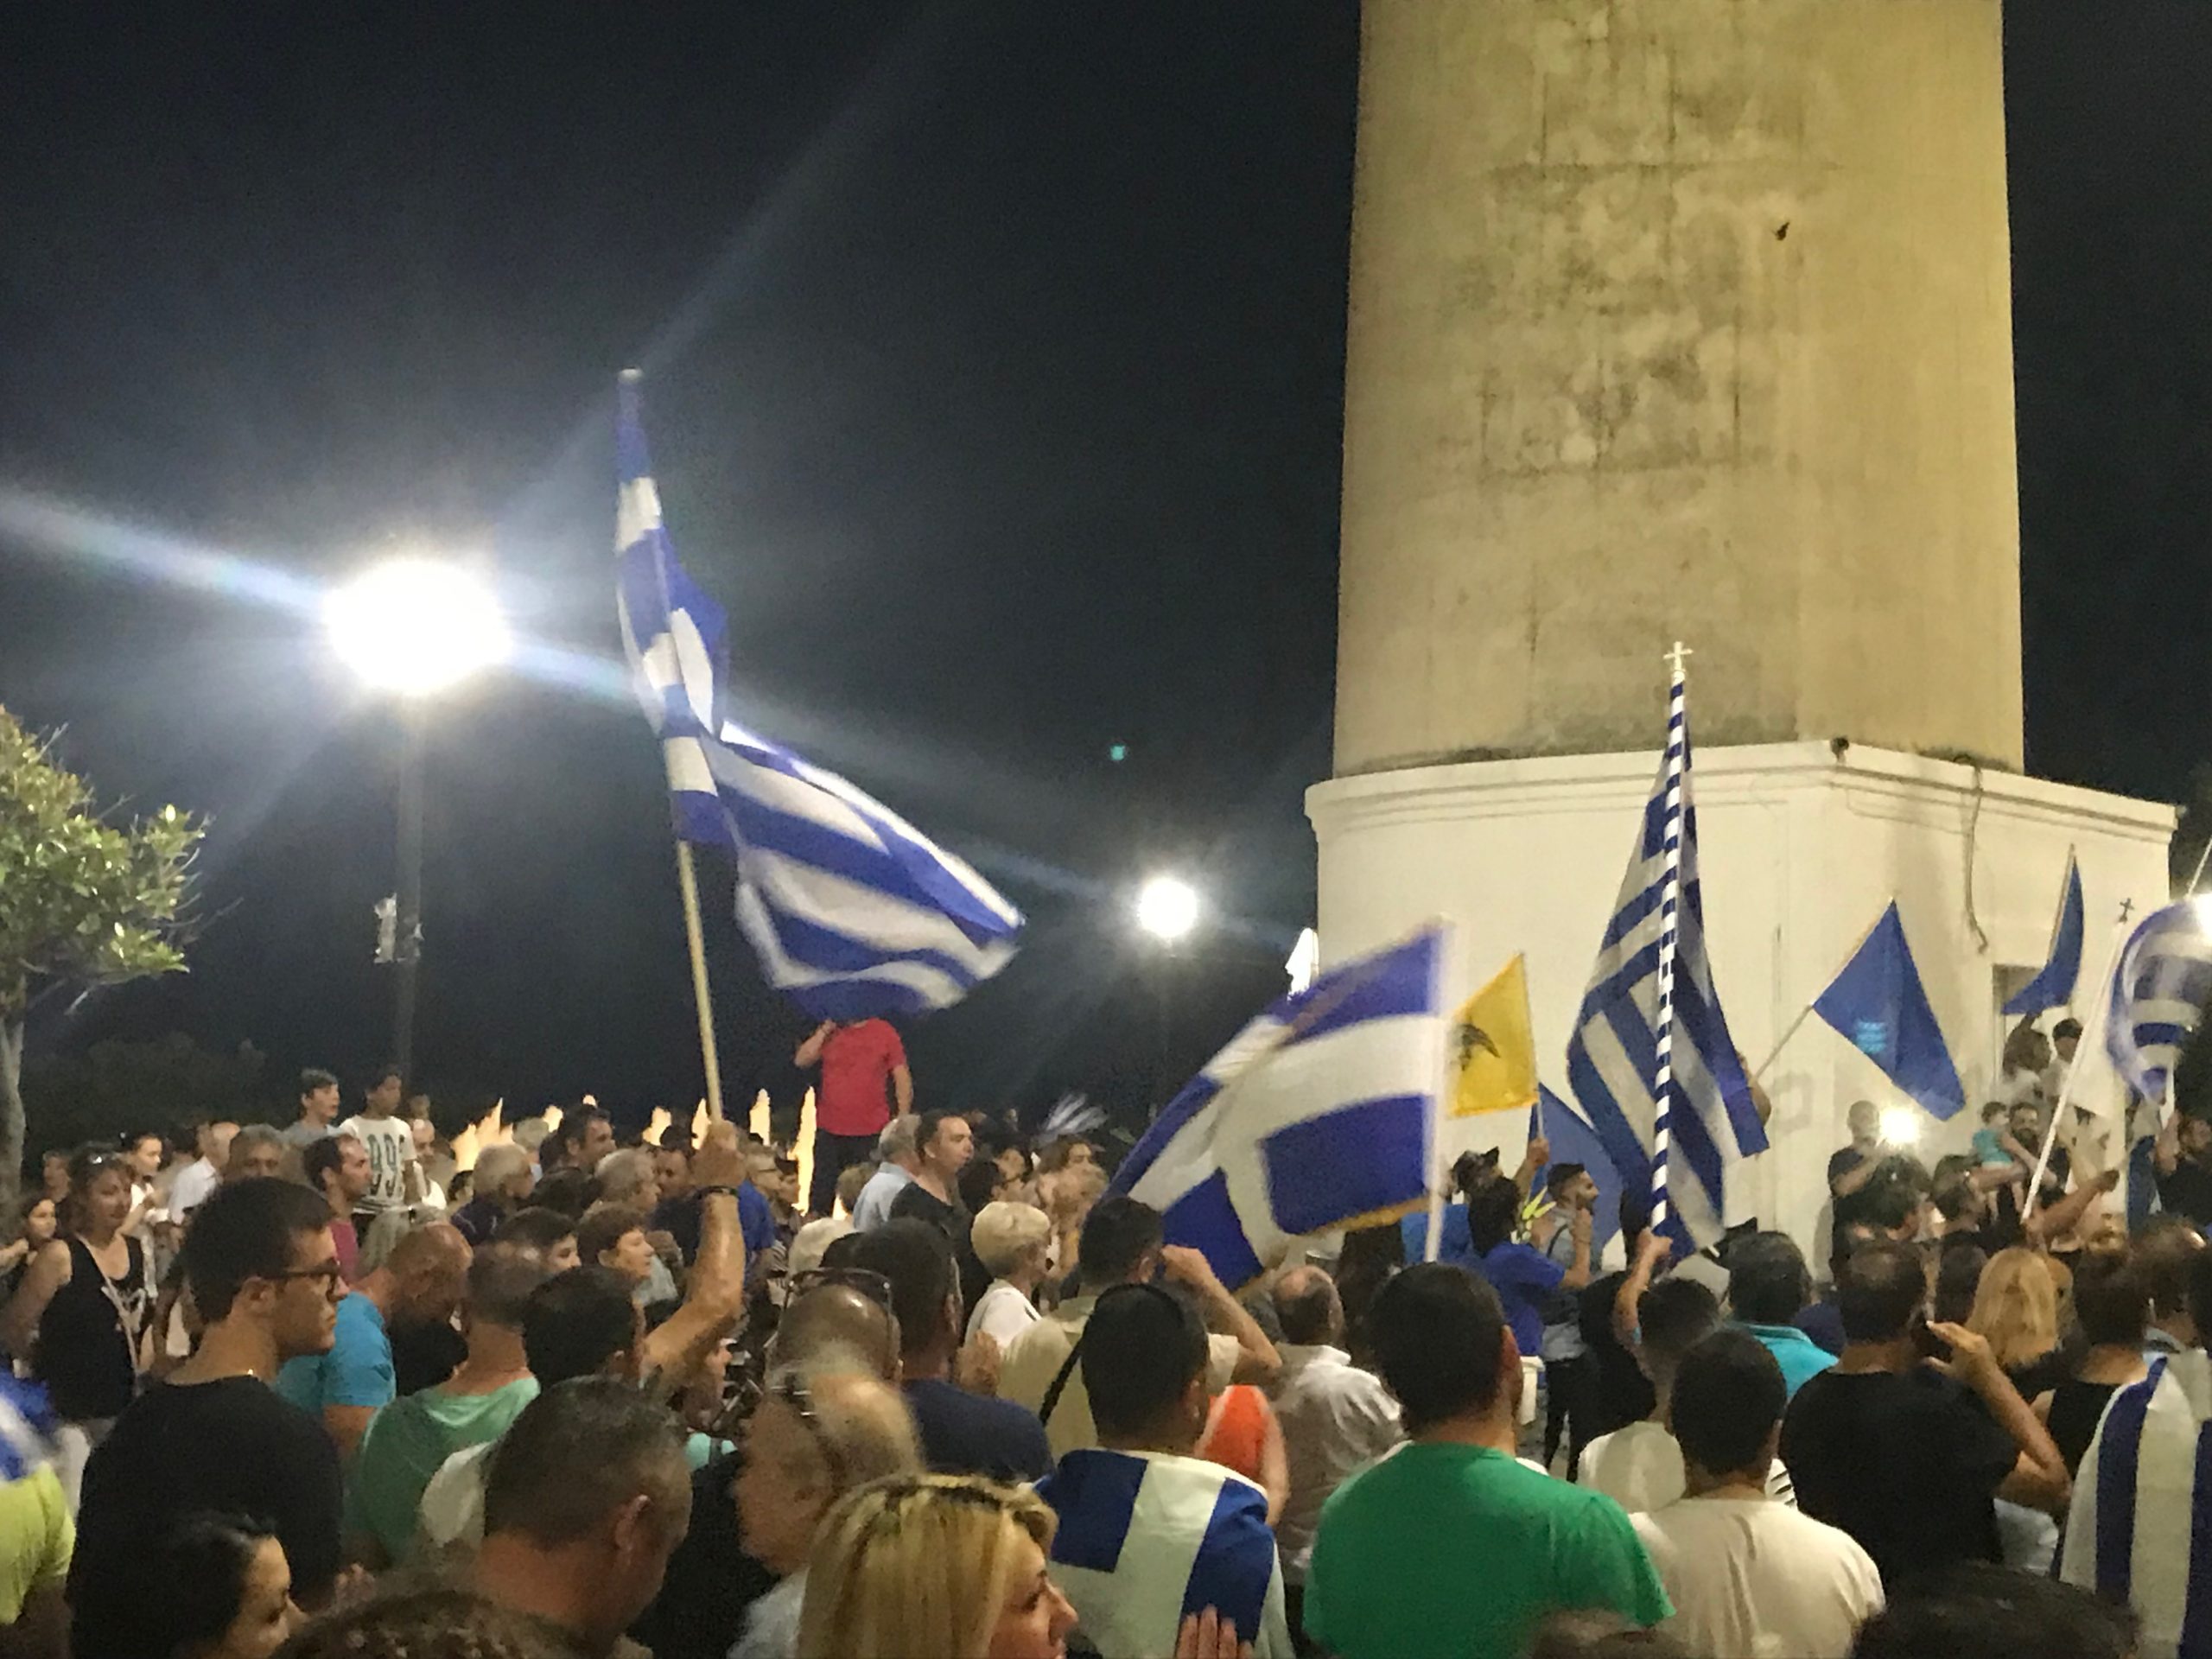 Αλεξανδρούπολη: Χιλιάδες λαού μπροστά από  την έδρα της ΧΙΙ Μ/Κ ΜΠ «Έβρος»  ζήτησαν  την υπεράσπιση της Μακεδονίας